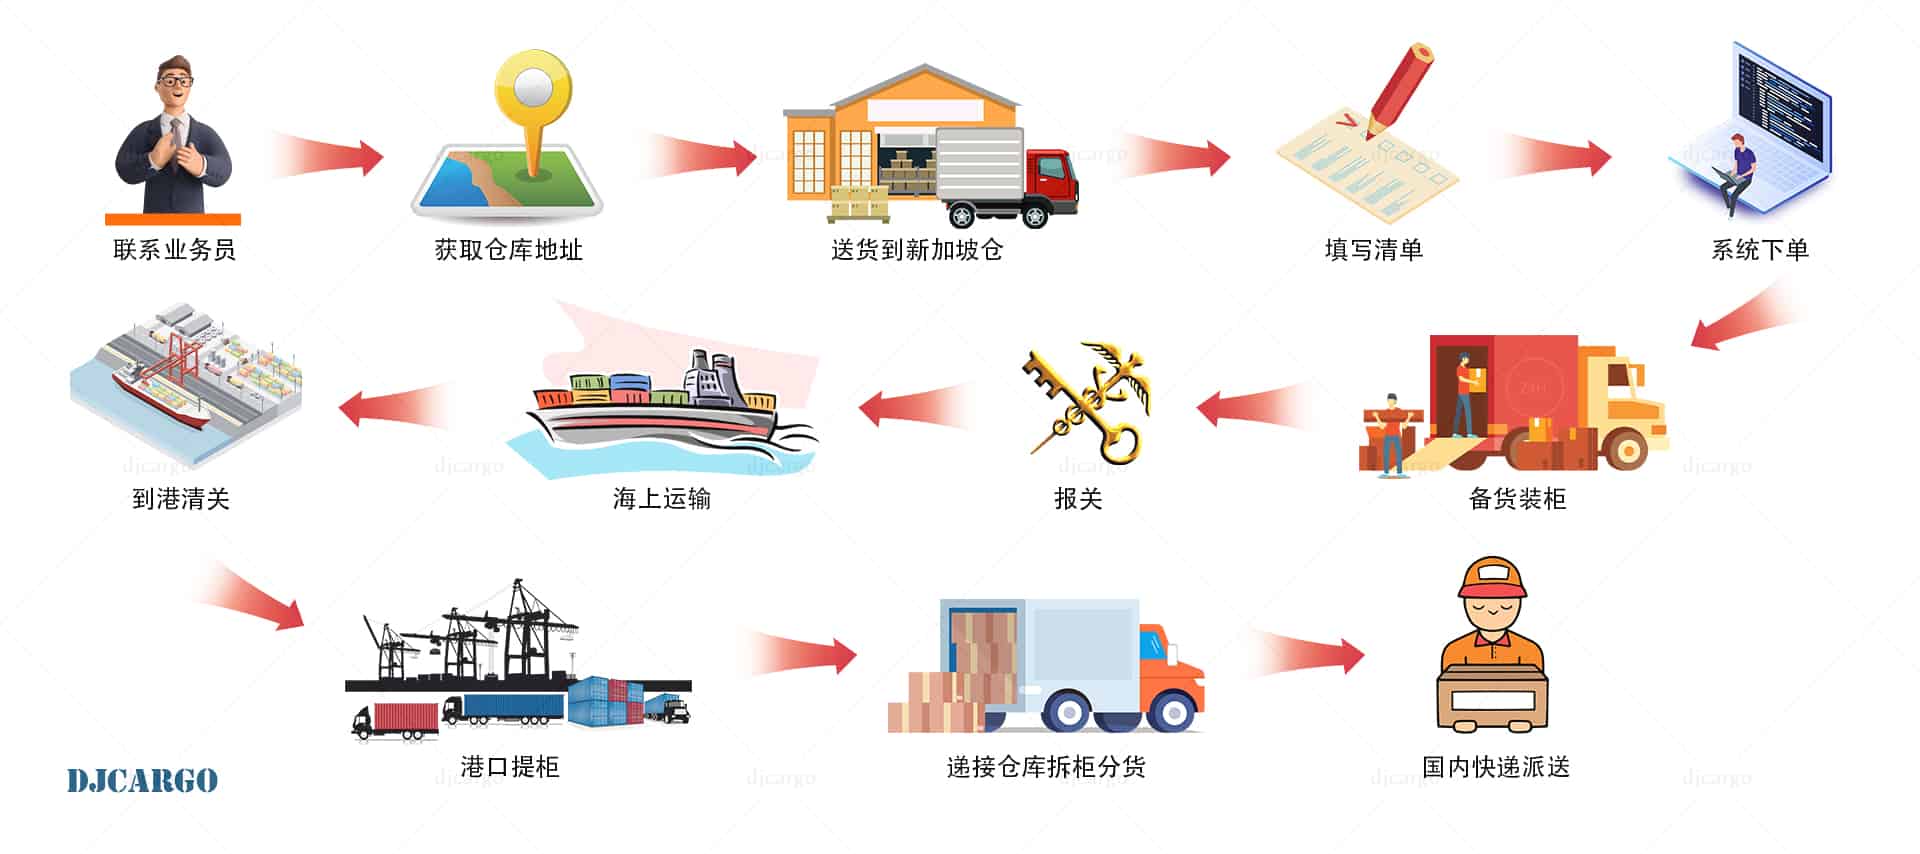 中国到新加坡运输流程图介绍